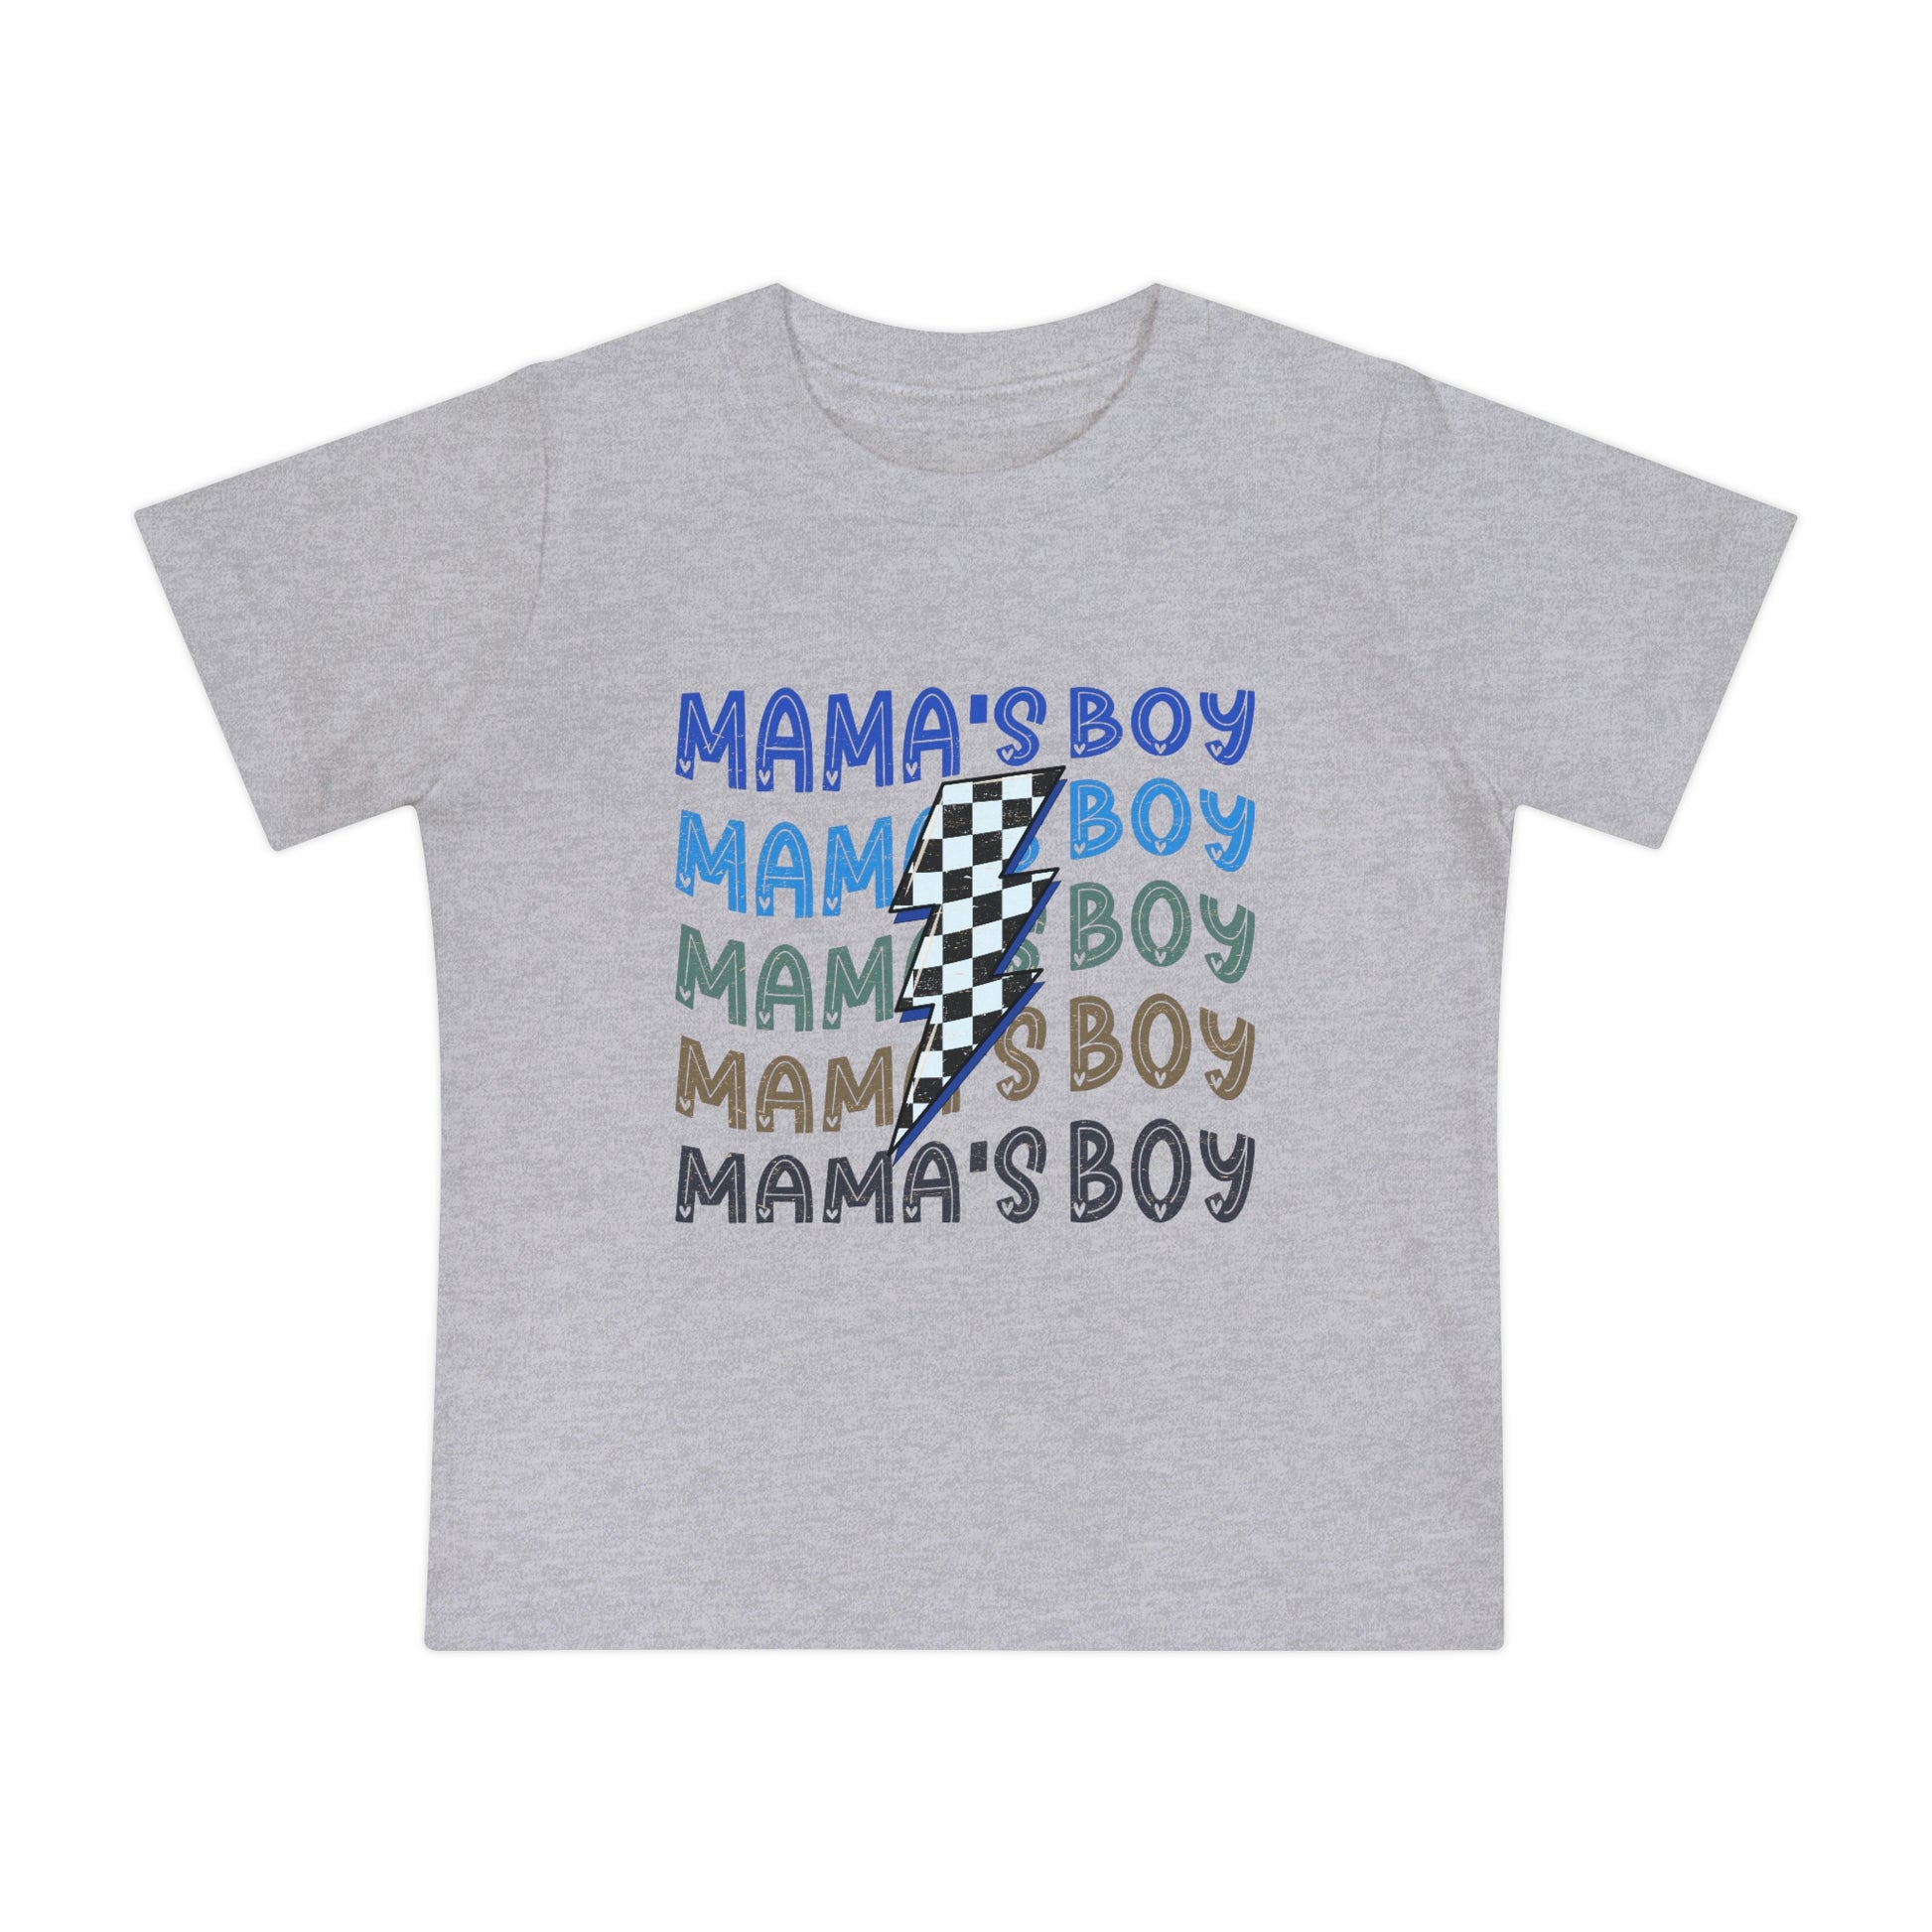 Mamas Boy T-shirt - Heart 2 Heart Boutique